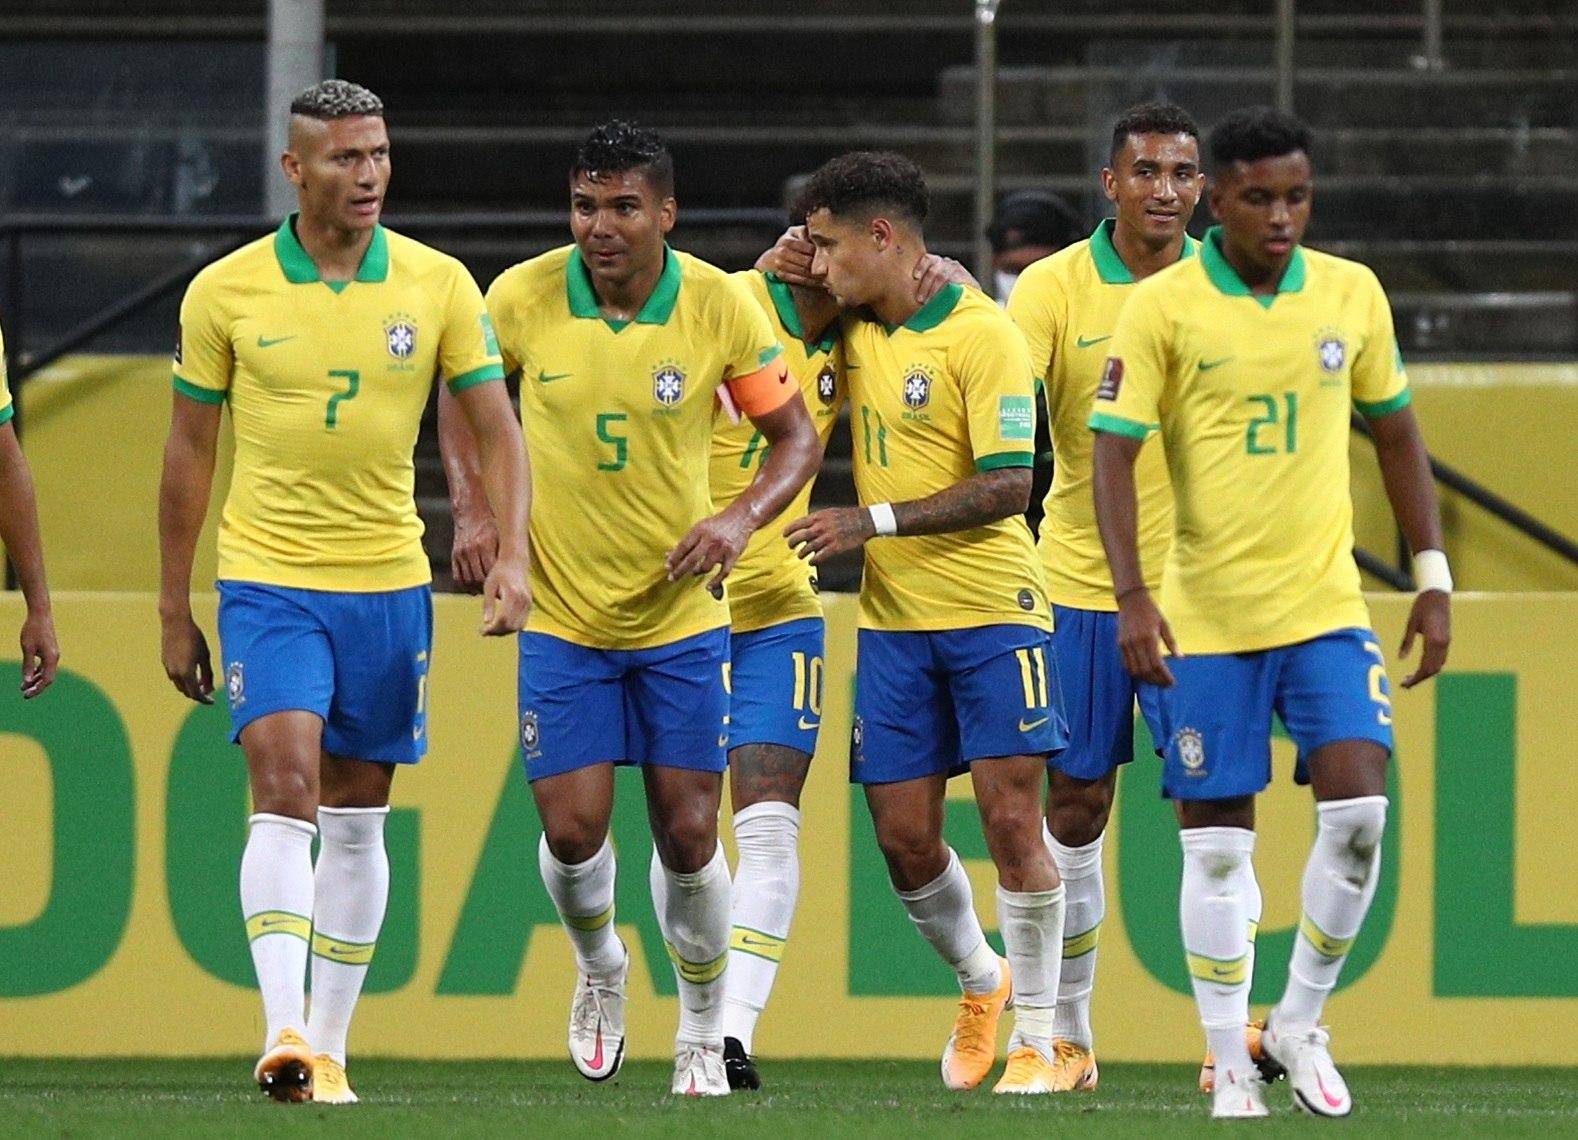 Brasil, Argentina, Uruguay y Colombia arrancaron ganando en la eliminatoria a Catar 2022 - Fútbol Internacional - Deportes